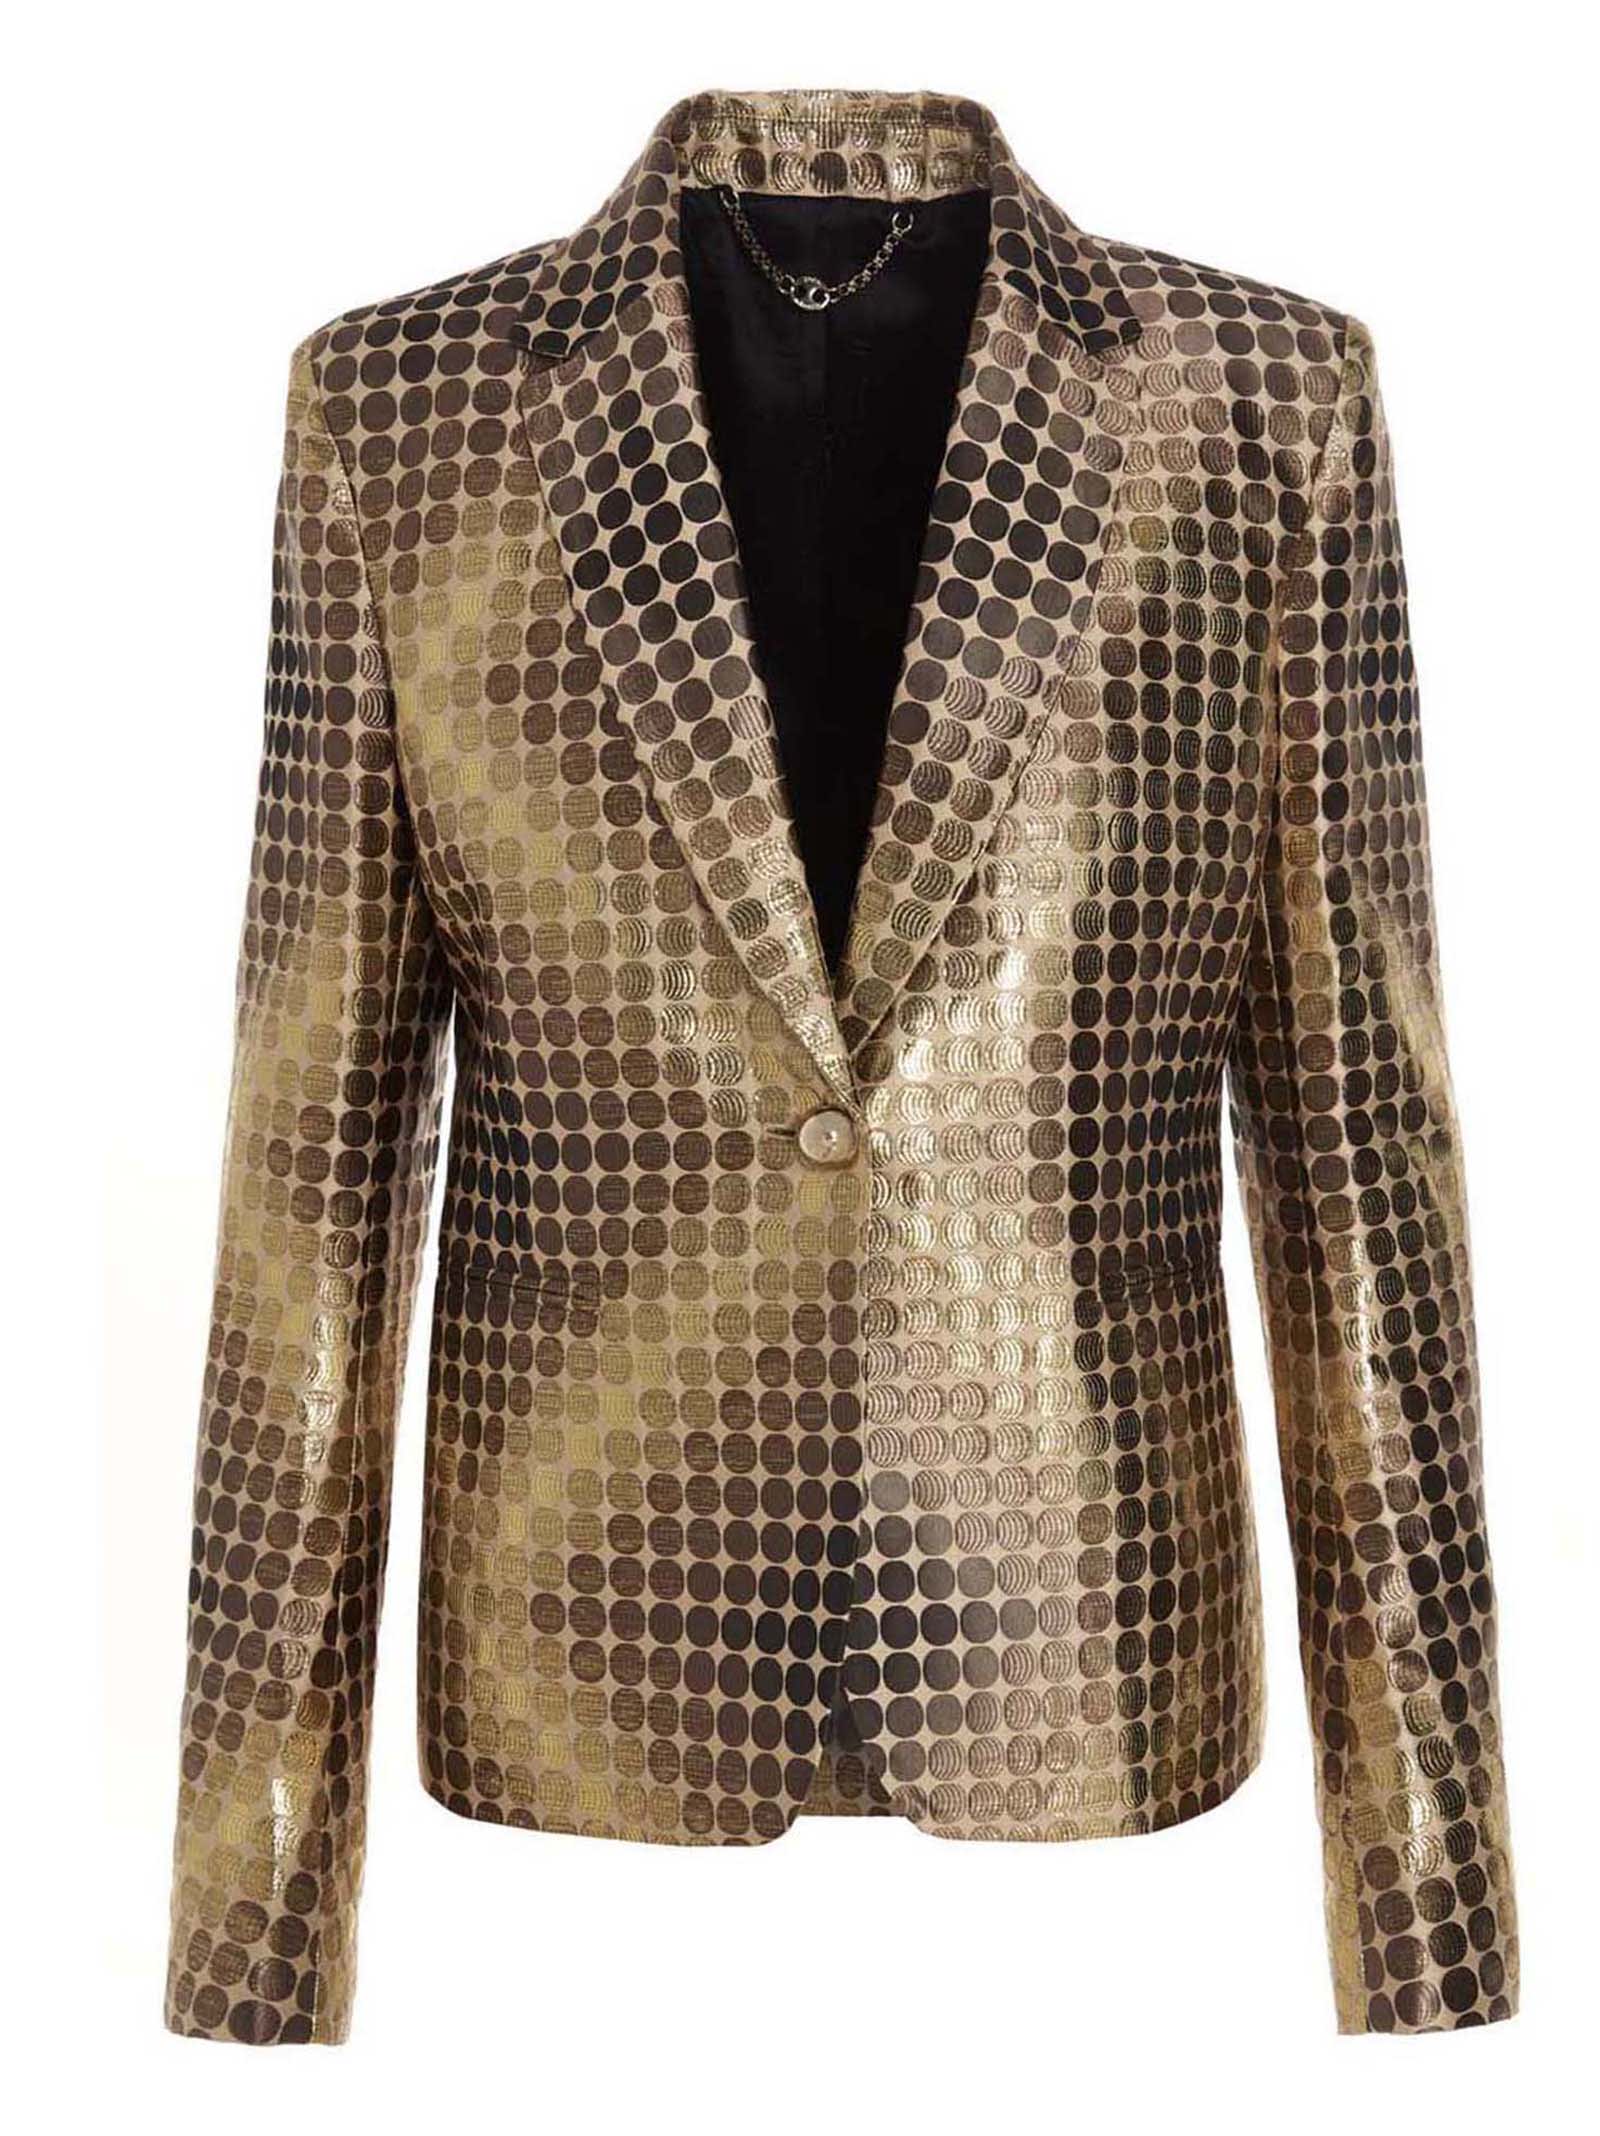 Paco Rabanne Metalized Intarsia Blazer Jacket